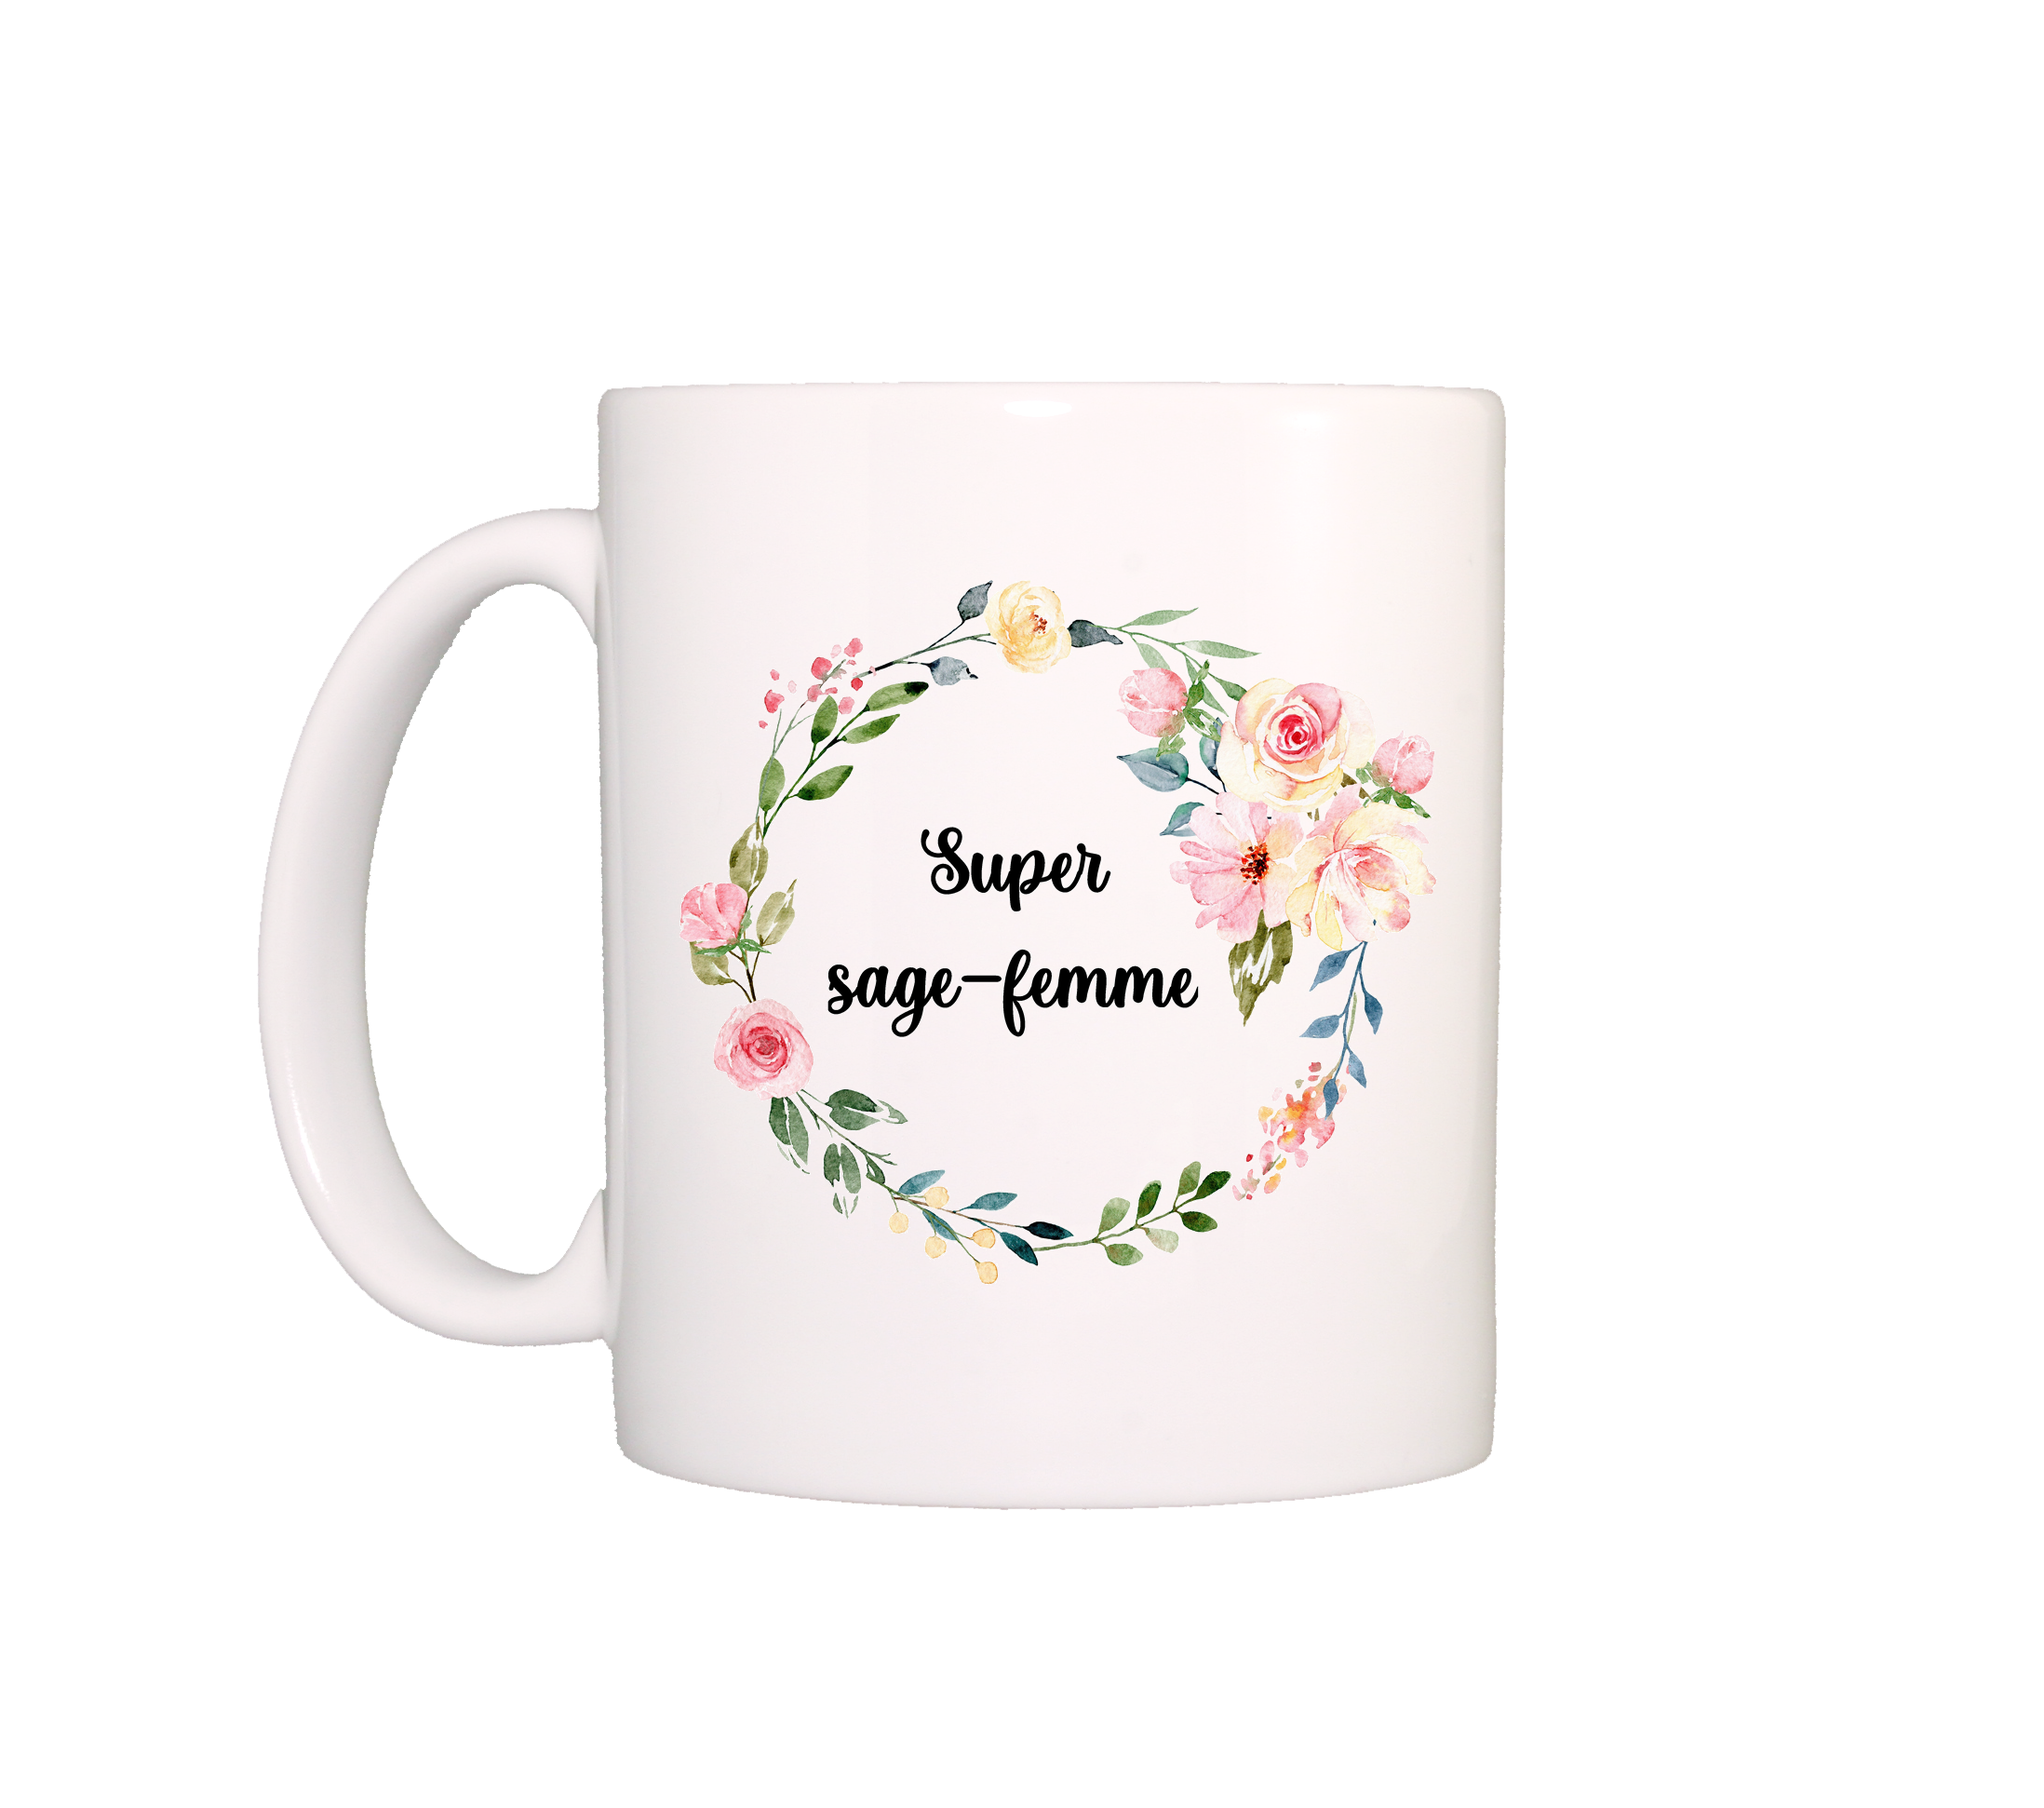 Mug Super sage-femme – Cool and the bag